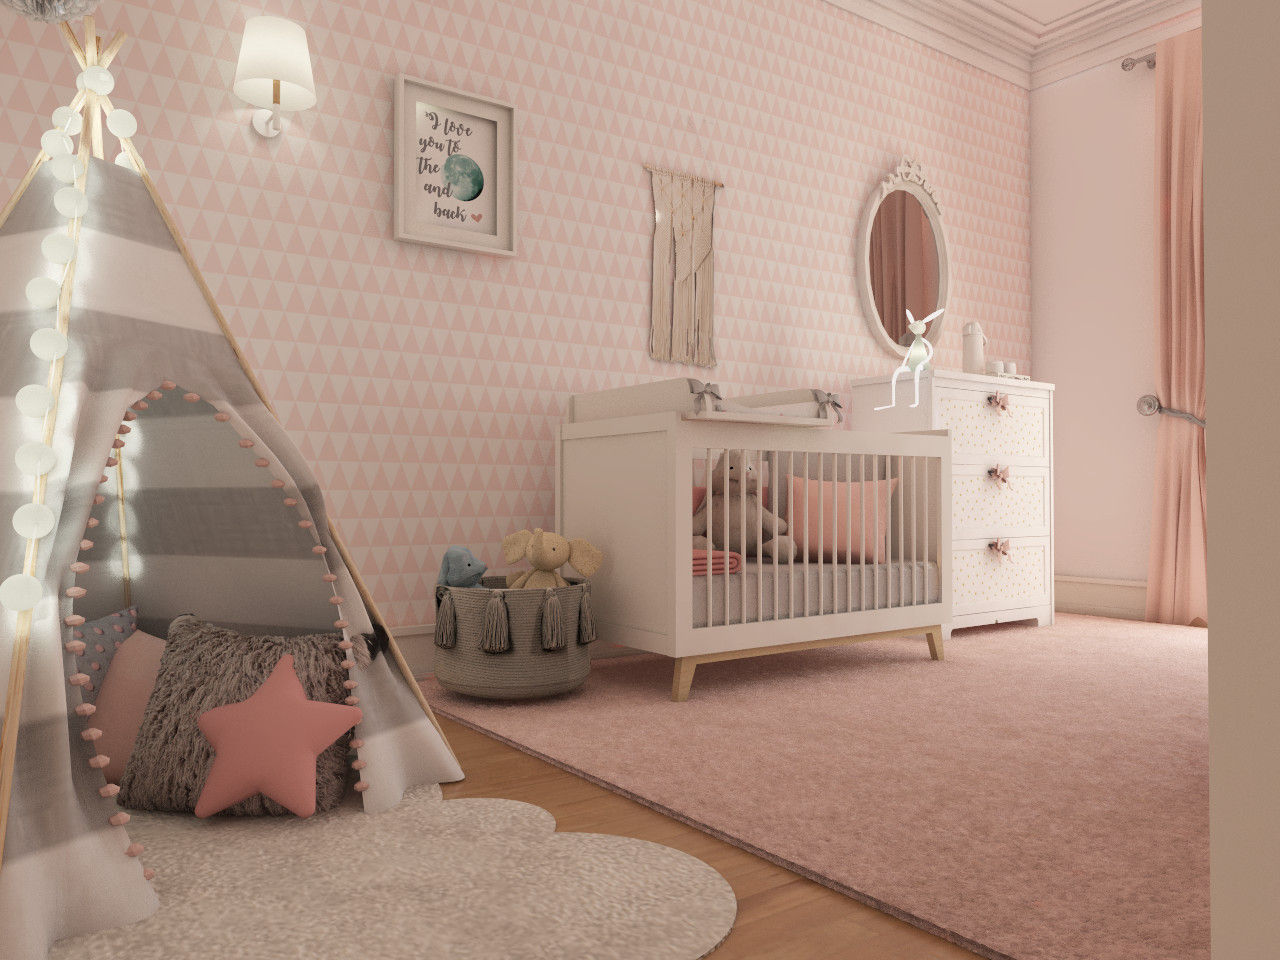 Projeto tranquilo de decoração de quarto de bebé , The Spacealist - Arquitectura e Interiores The Spacealist - Arquitectura e Interiores Recámaras para bebés